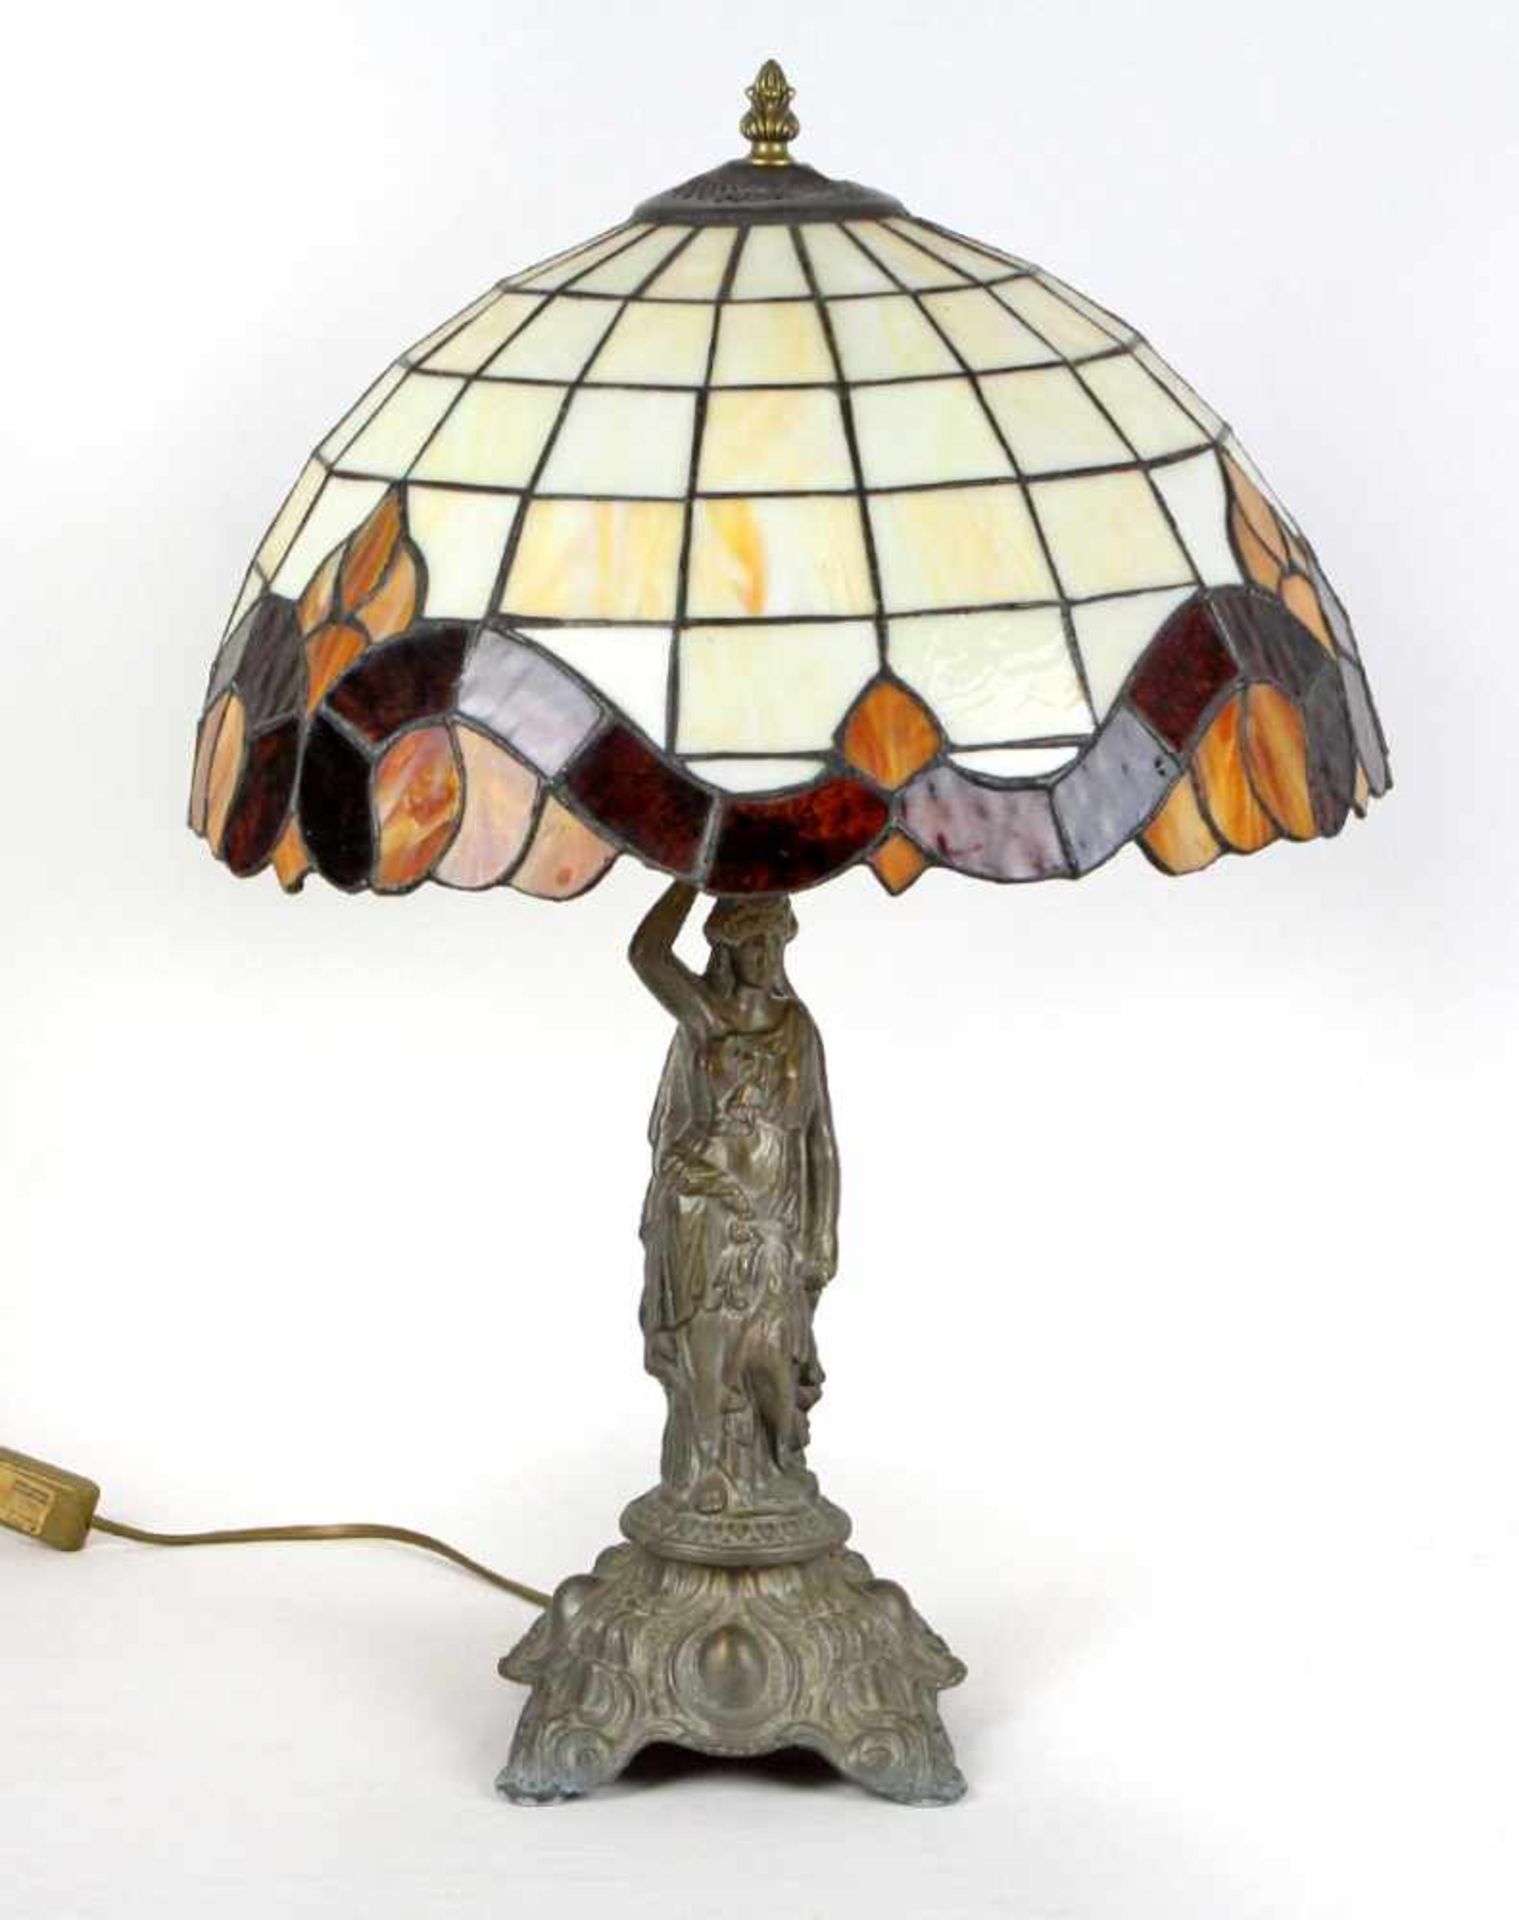 Tischlampe Tiffany Stilrunder Lampenschirm mit verschieden farbigen Flächen verziert, Ø ca. 40 cm,